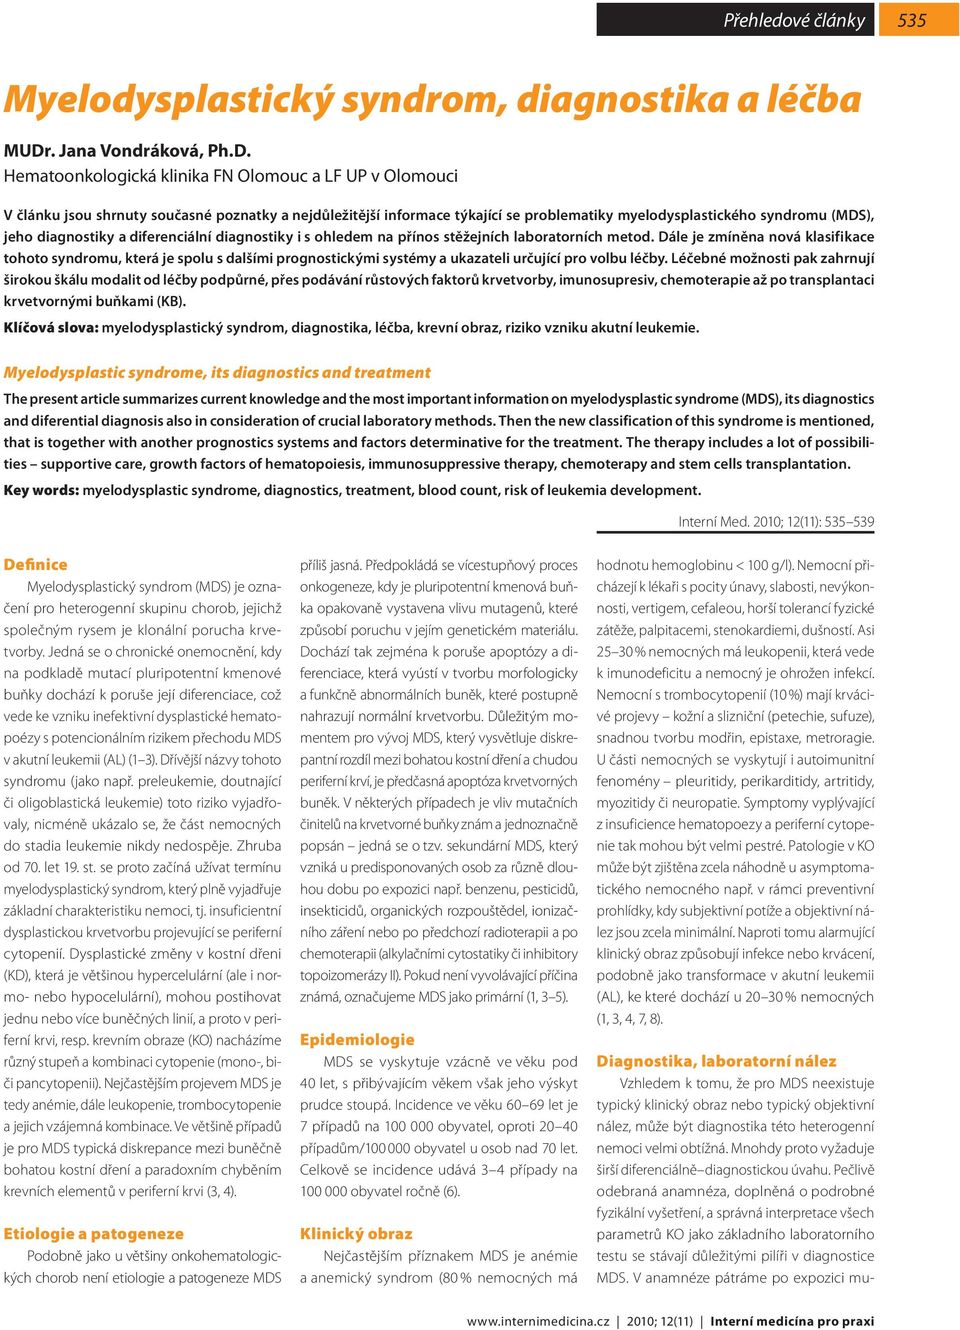 Hematoonkologická klinika FN Olomouc a LF UP v Olomouci V článku jsou shrnuty současné poznatky a nejdůležitější informace týkající se problematiky myelodysplastického syndromu (MDS), jeho